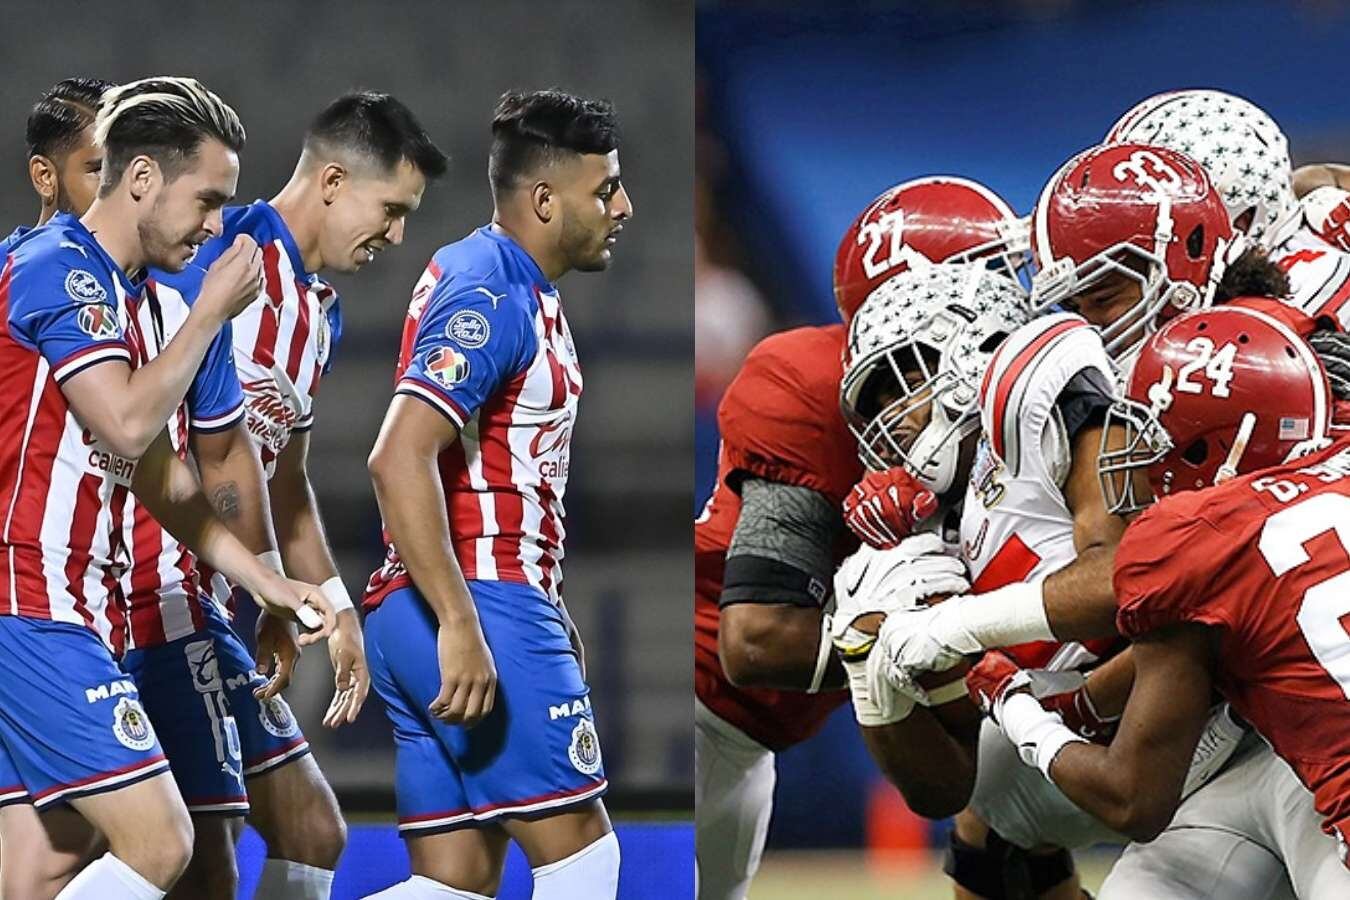 La hinchada rojiblanca critica a Chivas porque copiaron un diseño de la NFL del 2018